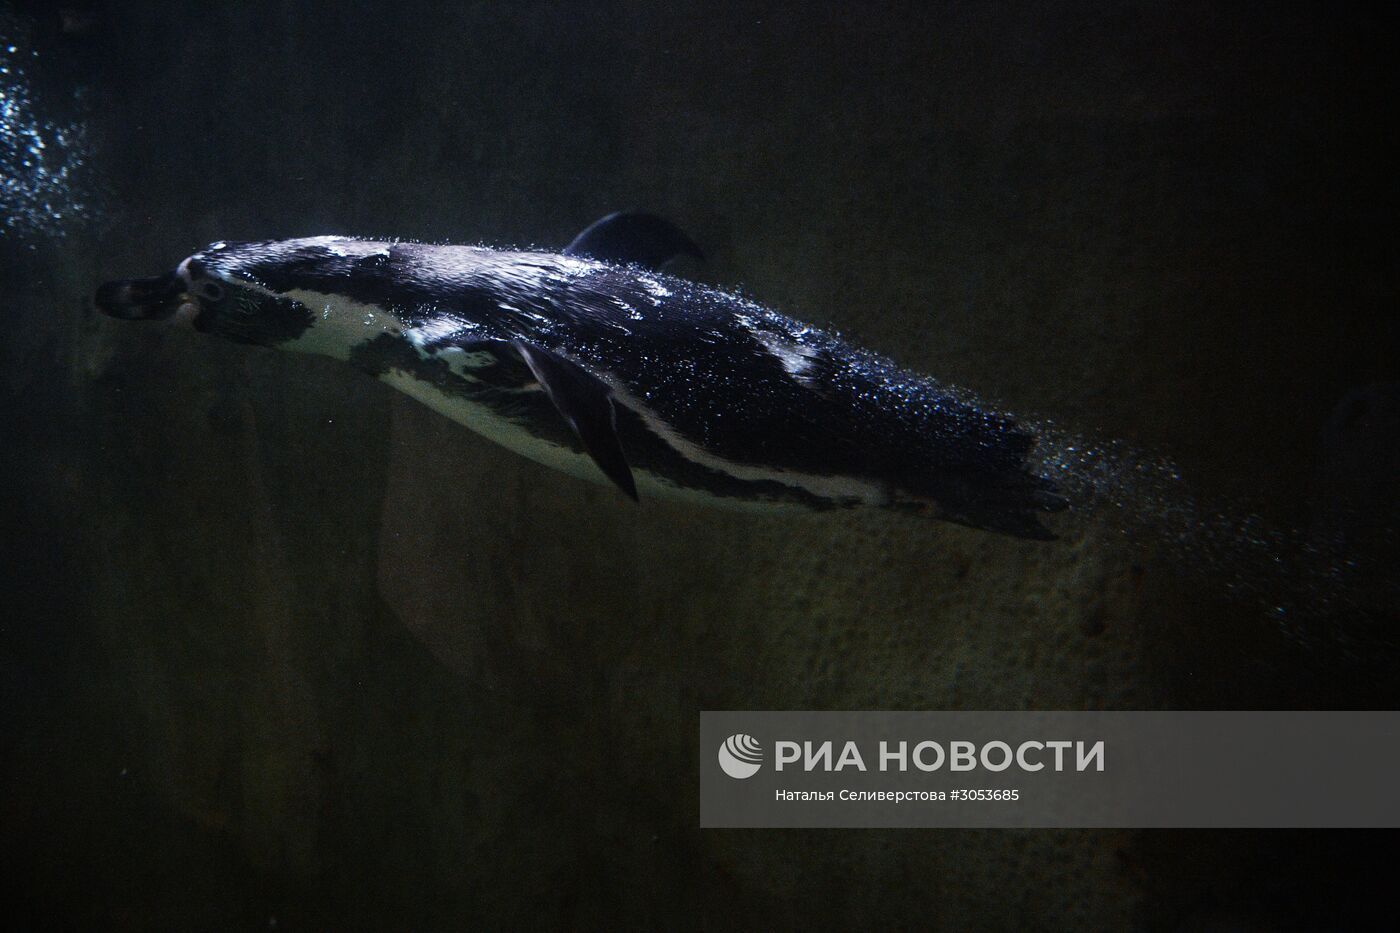 Взвешивание и кормление пингвинов Гумбольдта в Московском зоопарке